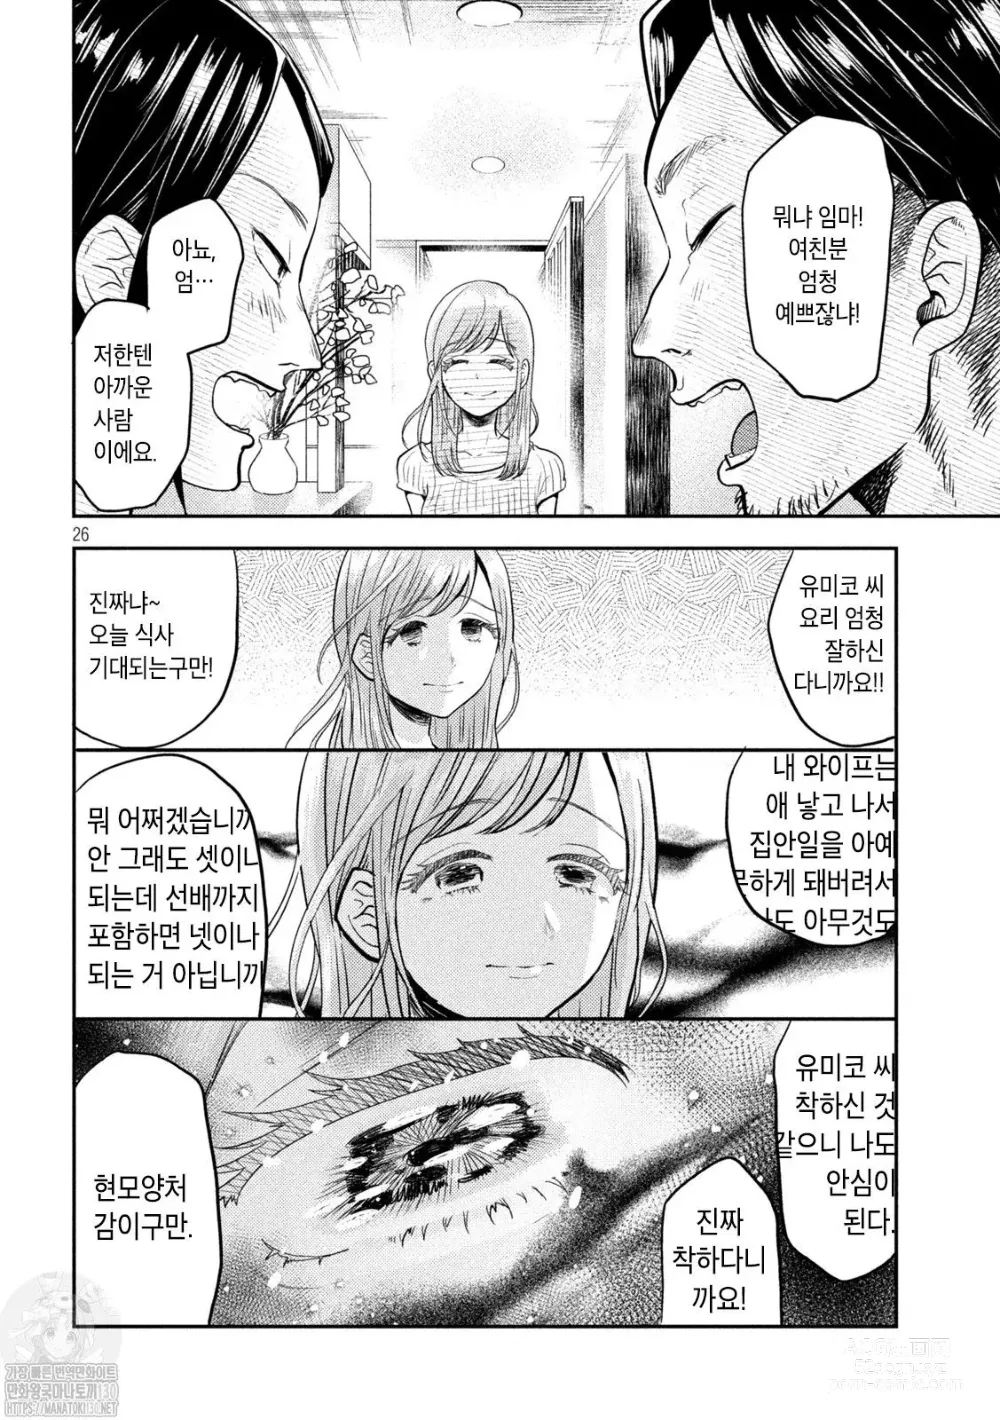 Page 26 of manga Haha wa Tsuyoi.